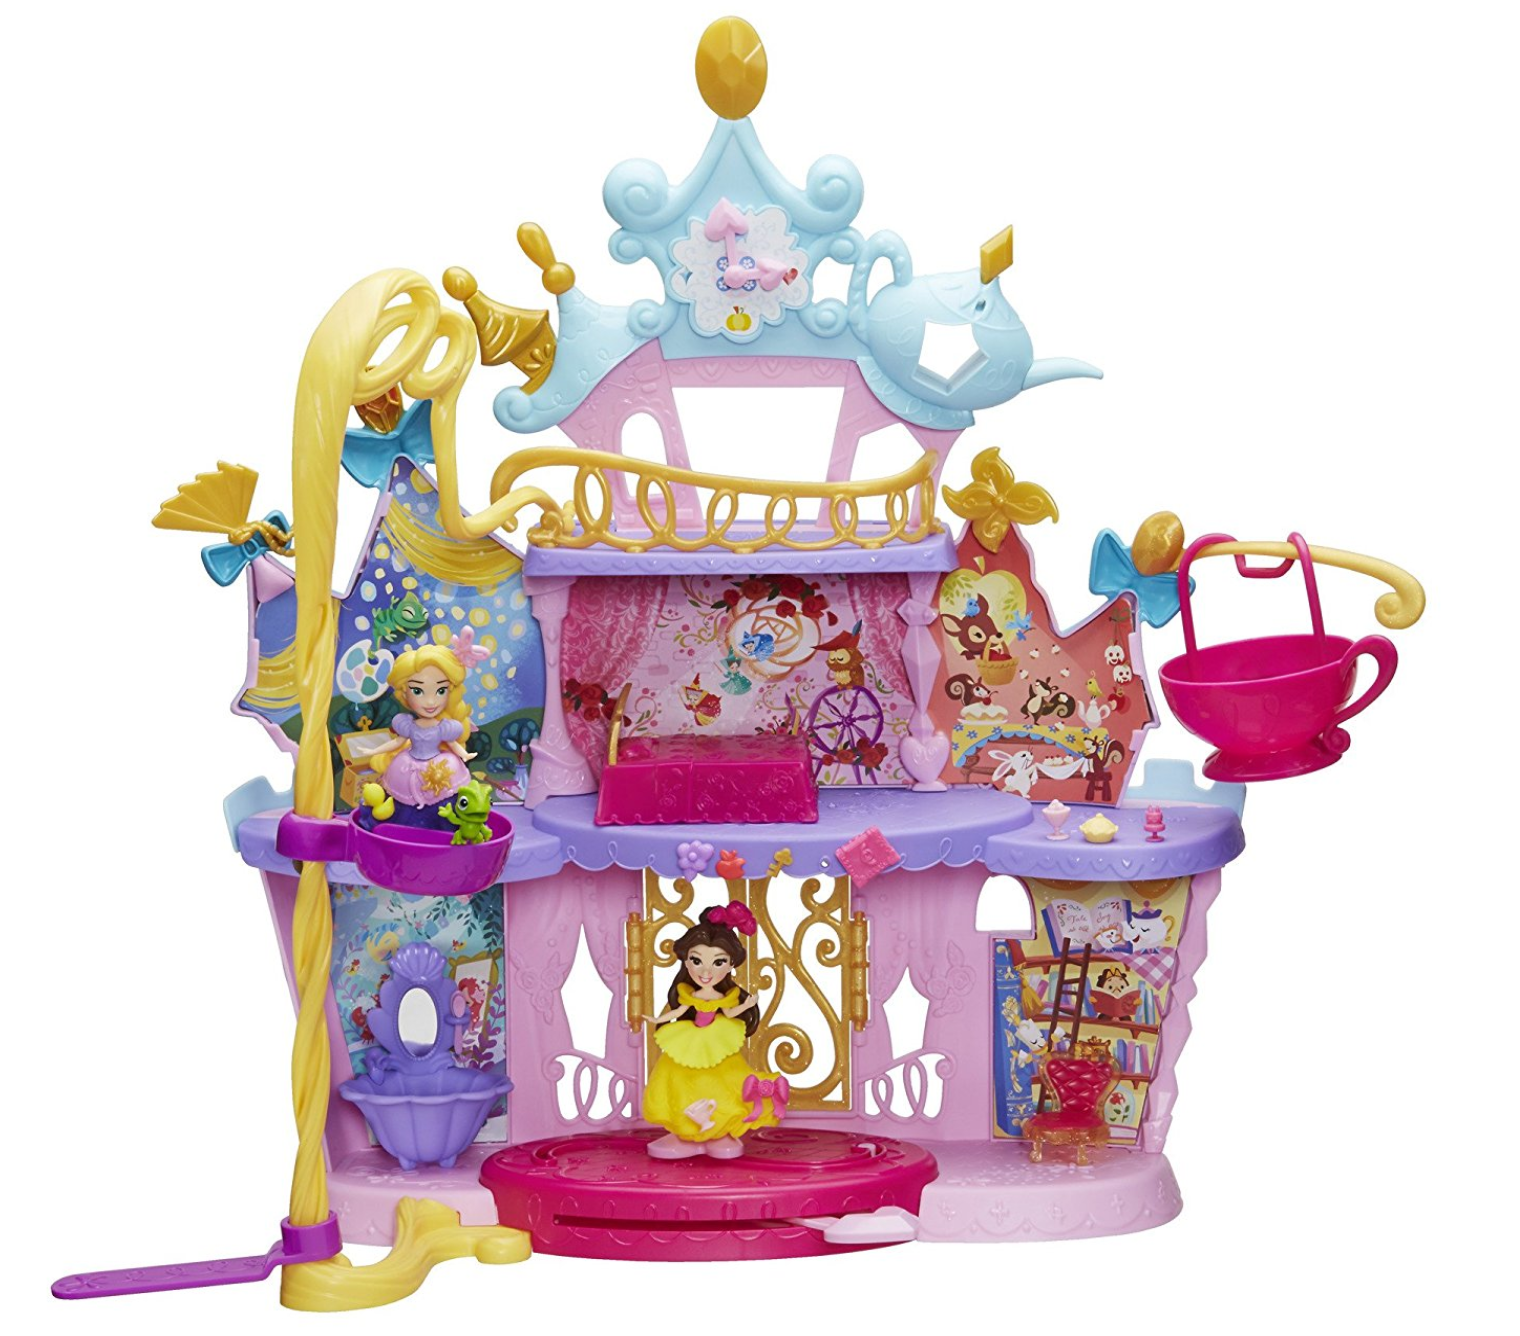 Castello delle Principesse Disney giocattolo prezzo - GBR